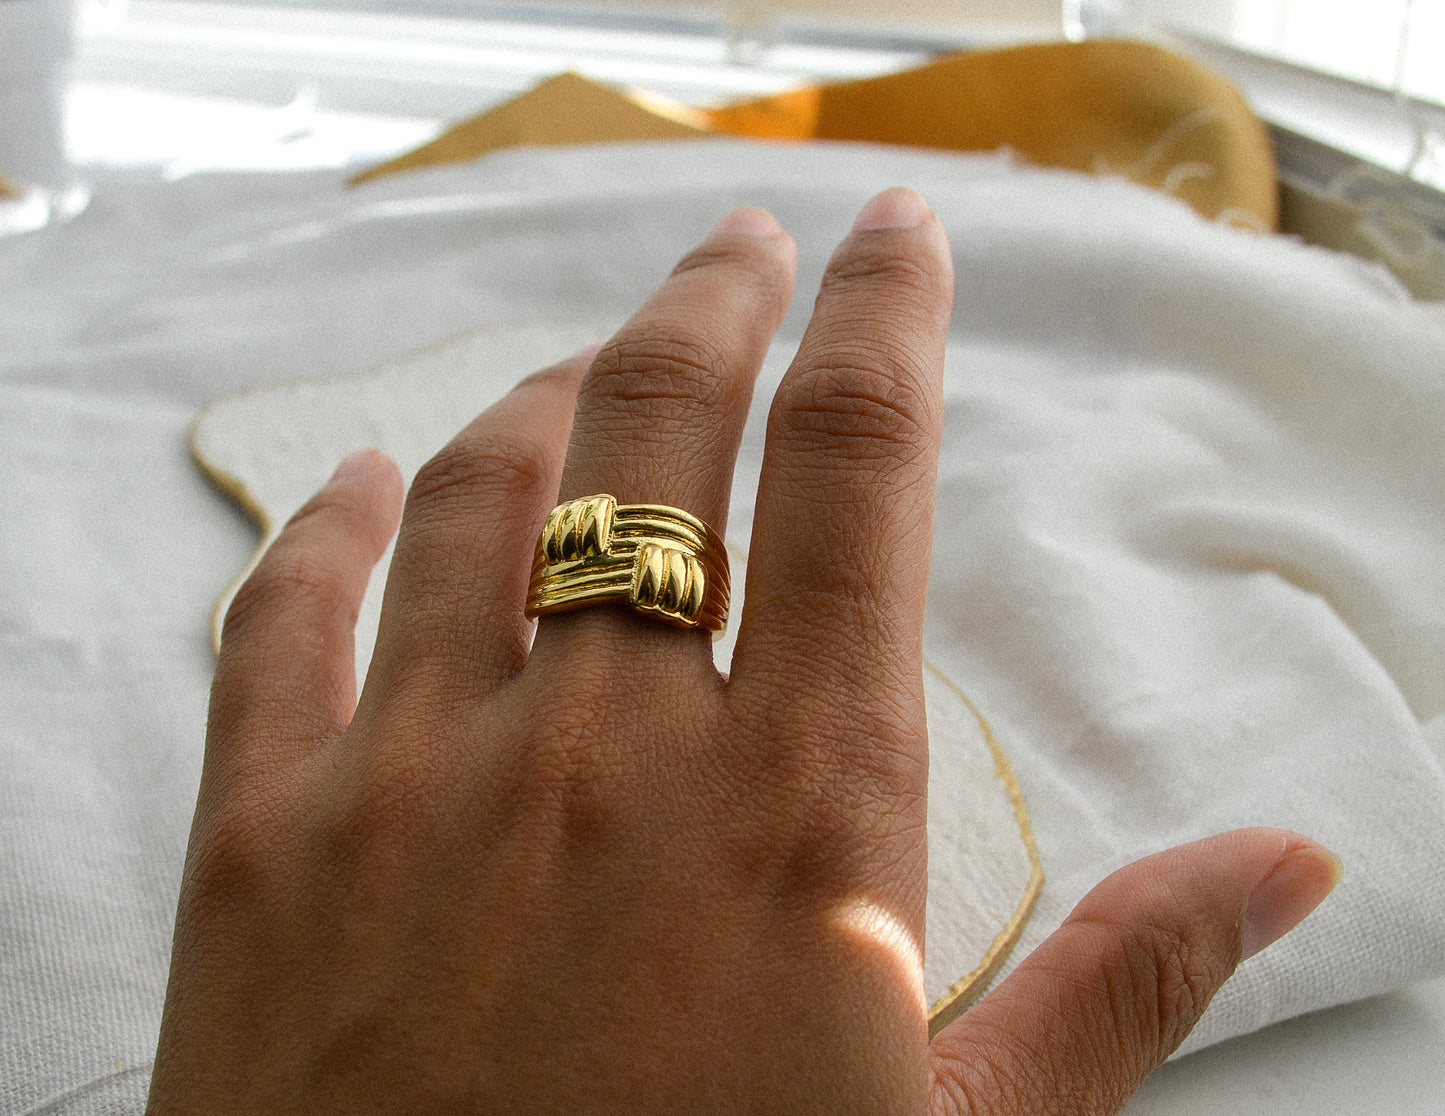 18k gold filled adjustable textured ring